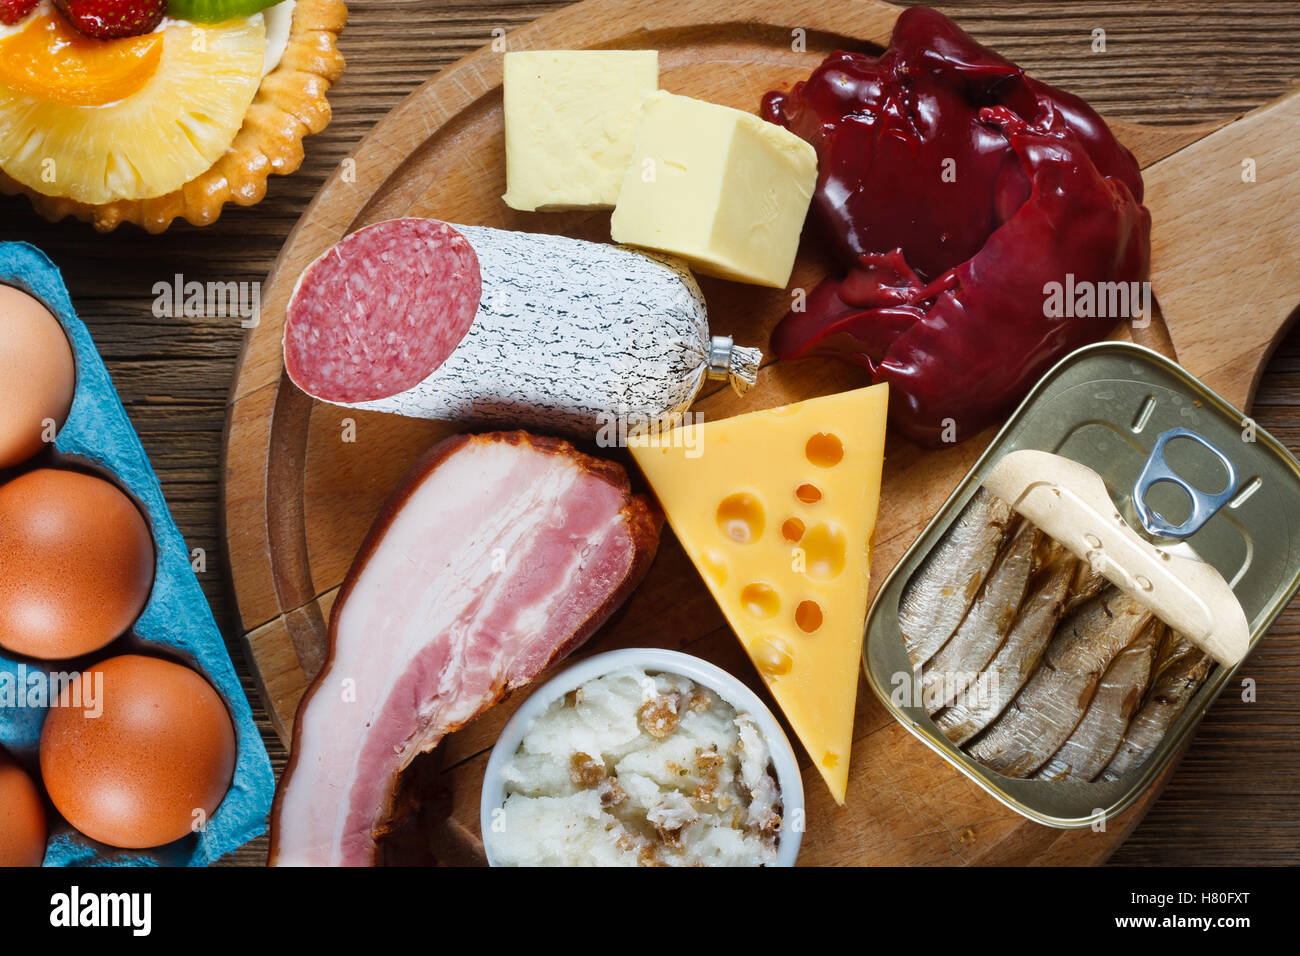 Gli alimenti ricchi di colesterolo come uova, fegato, giallo formaggio, burro, pancetta, lardo con la cipolla, sardine in olio e dessert - a tazza Foto Stock